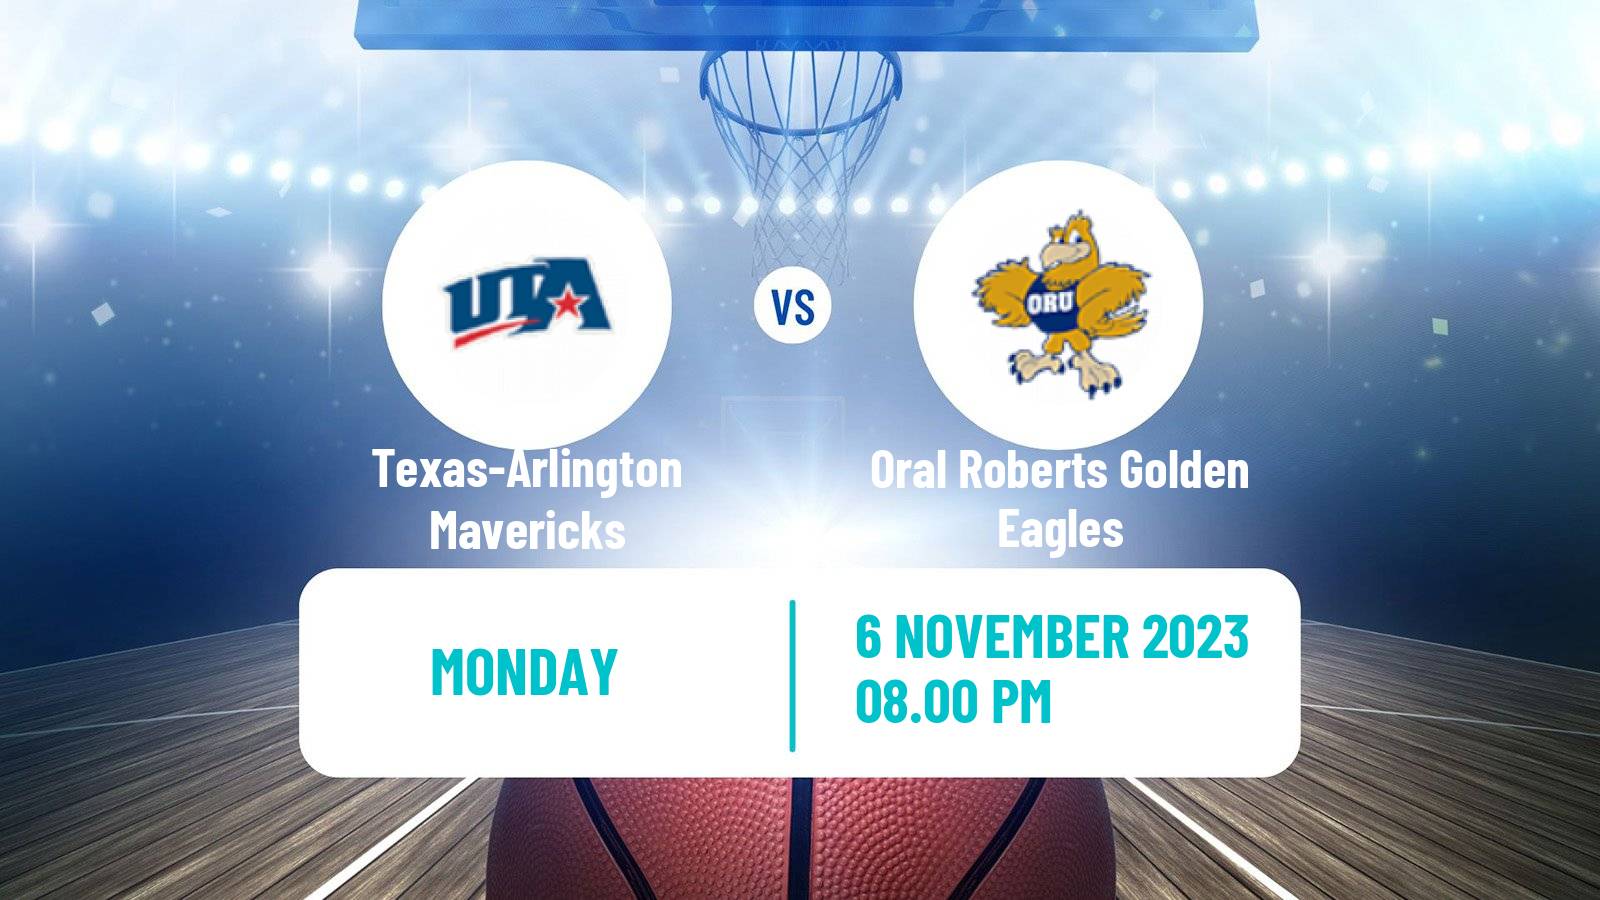 Basketball NCAA College Basketball Texas-Arlington Mavericks - Oral Roberts Golden Eagles